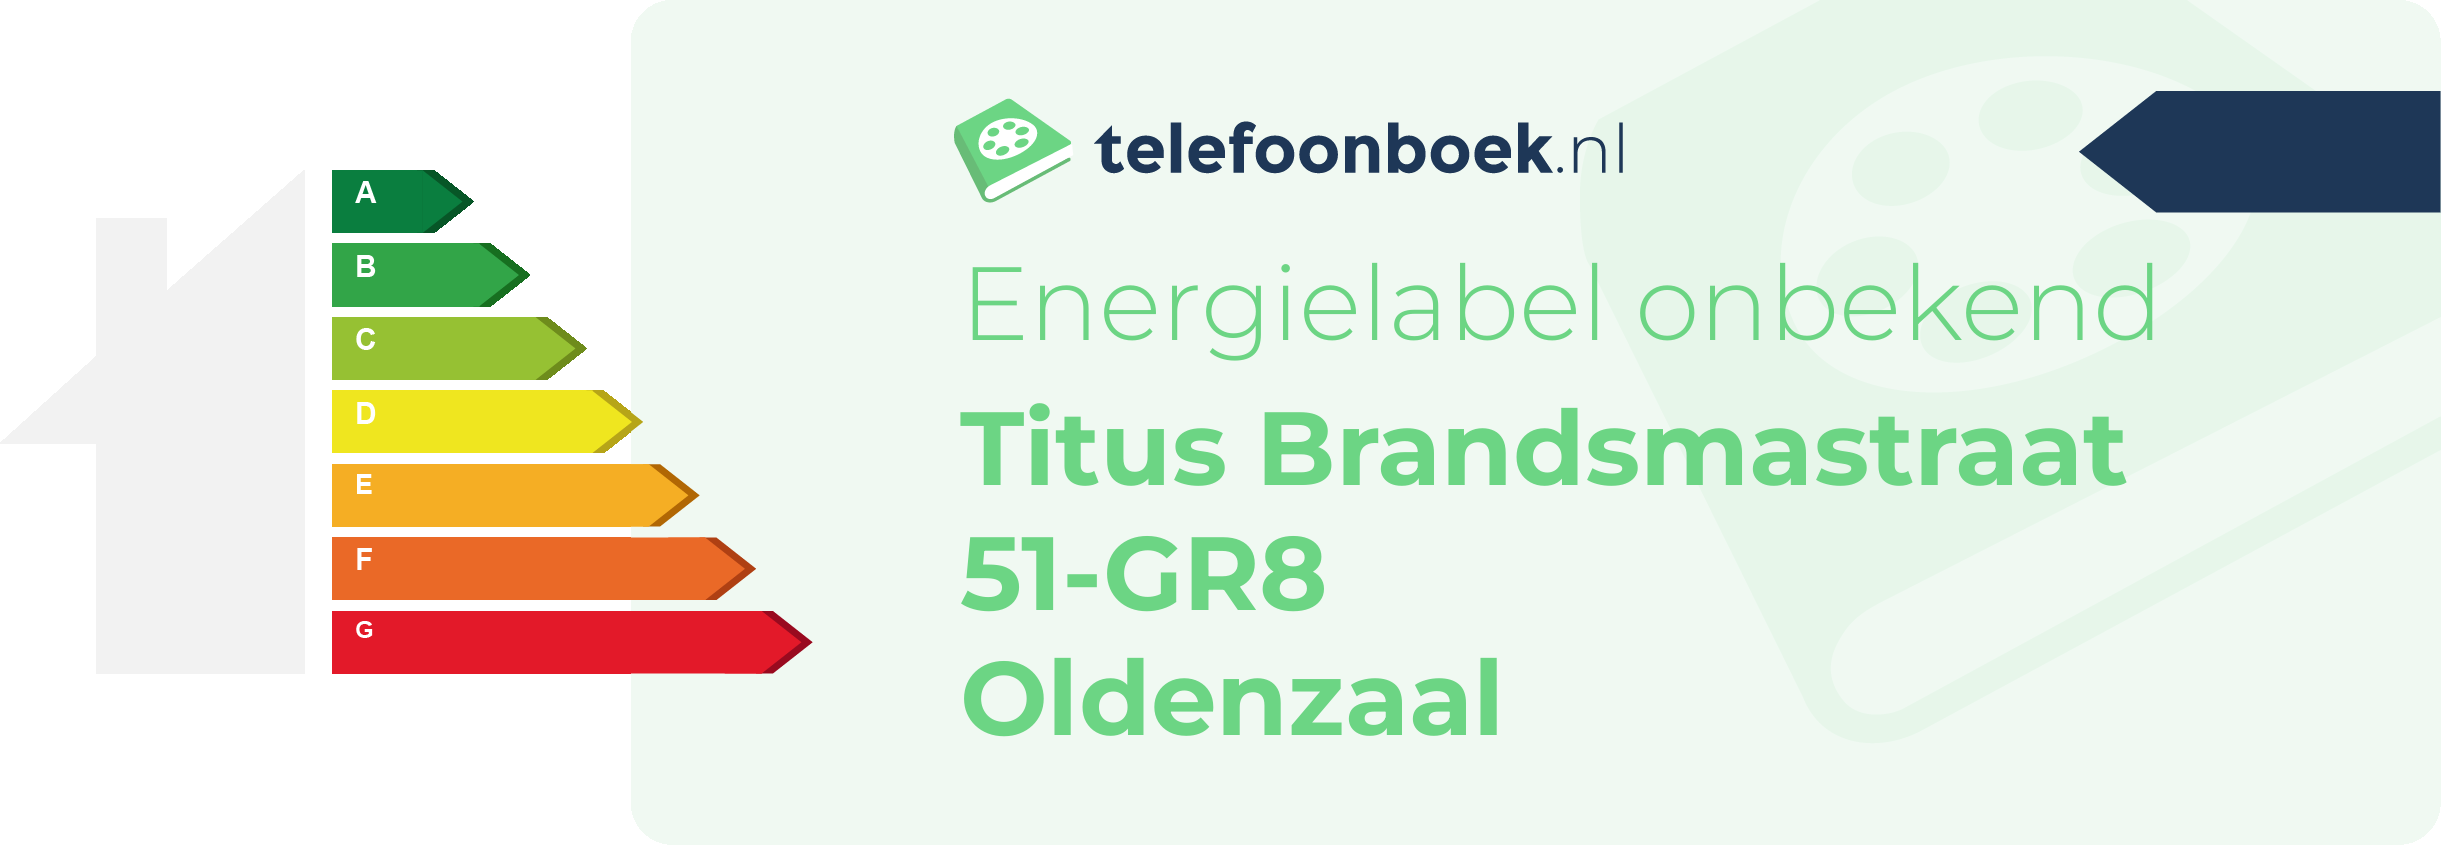 Energielabel Titus Brandsmastraat 51-GR8 Oldenzaal